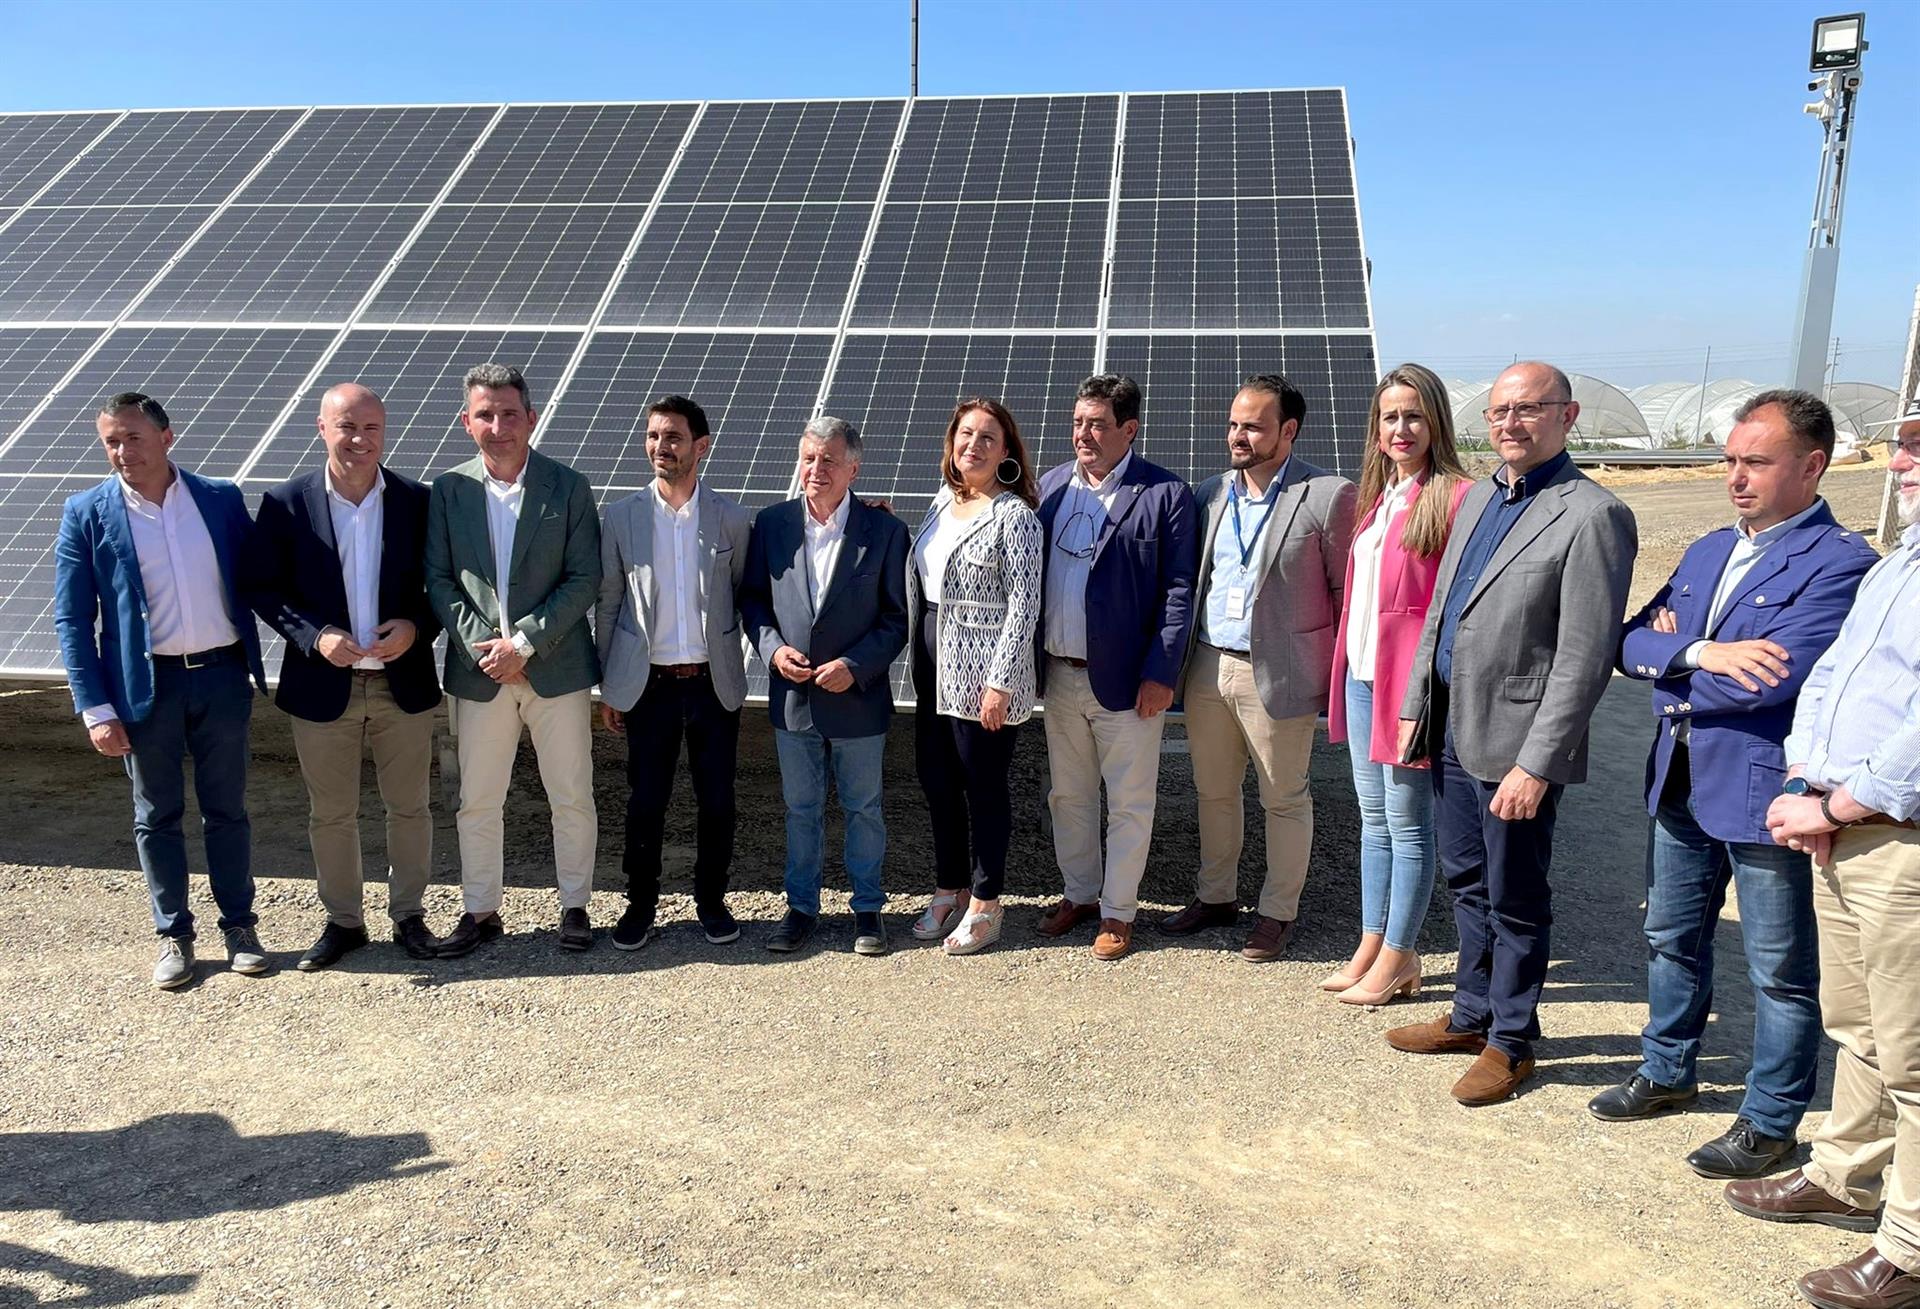 Se pone en funcionamiento la nueva instalación fotovoltaica ‘Valdemaría’ desplegada por Magtel que abastecerá 550 hectáreas de cultivo - Magtel